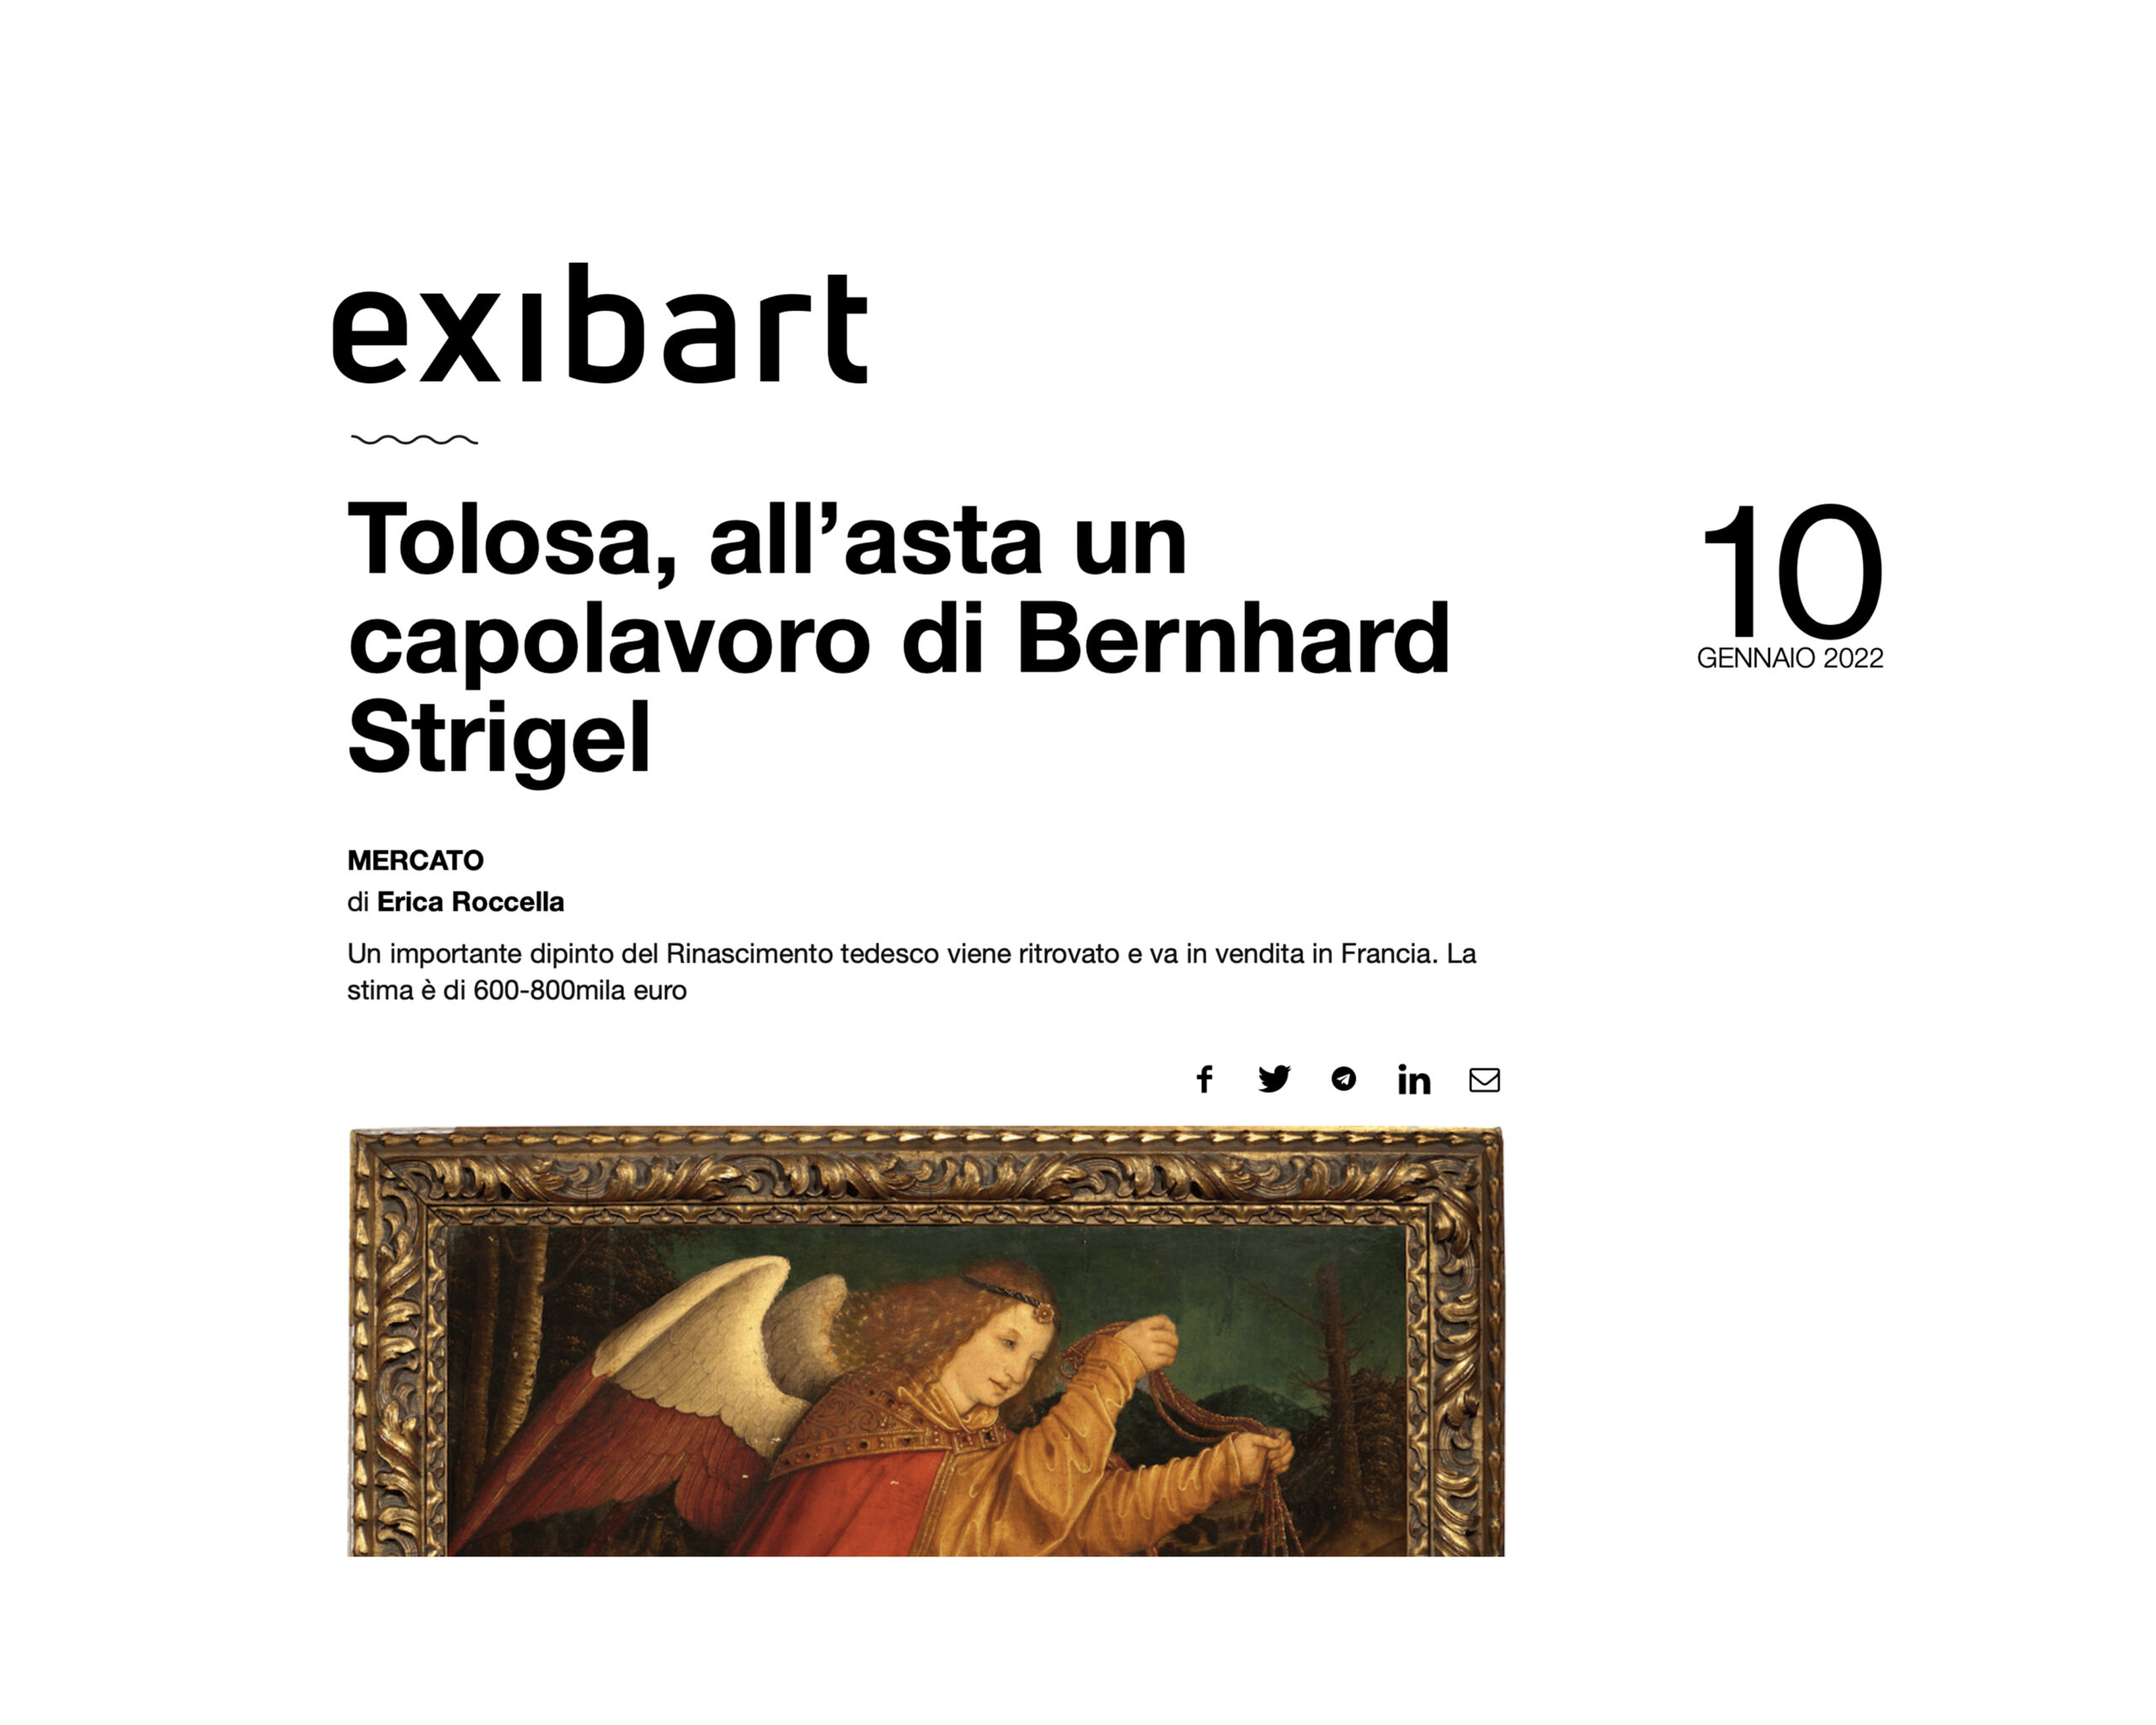 « Tolosa, all’asta un capolavoro di Bernhard Strigel », 10 janvier 2022